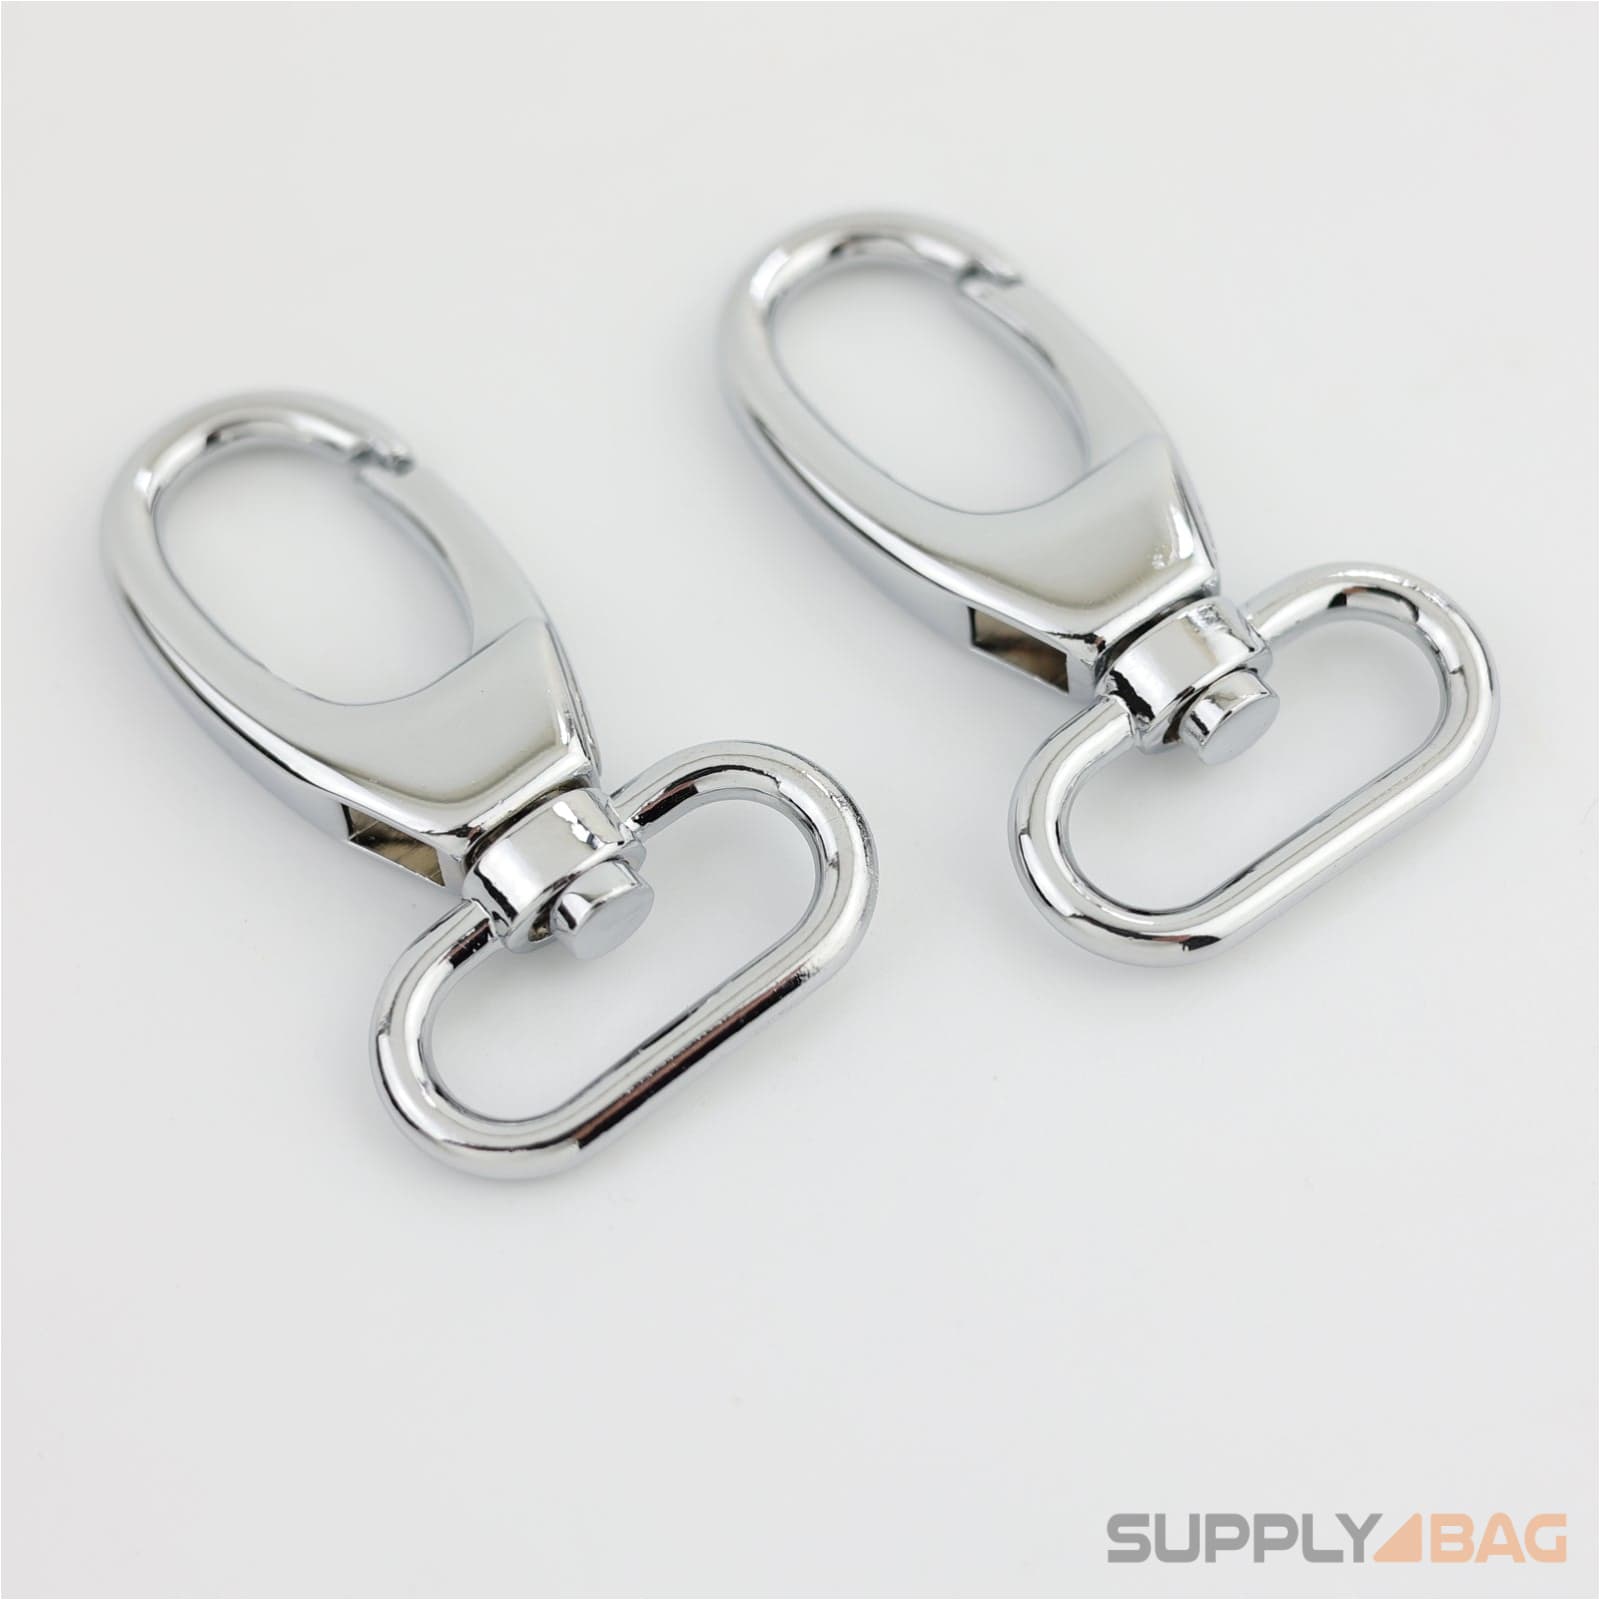 Silver Swivel Hooks 1 inch - 2 Pack